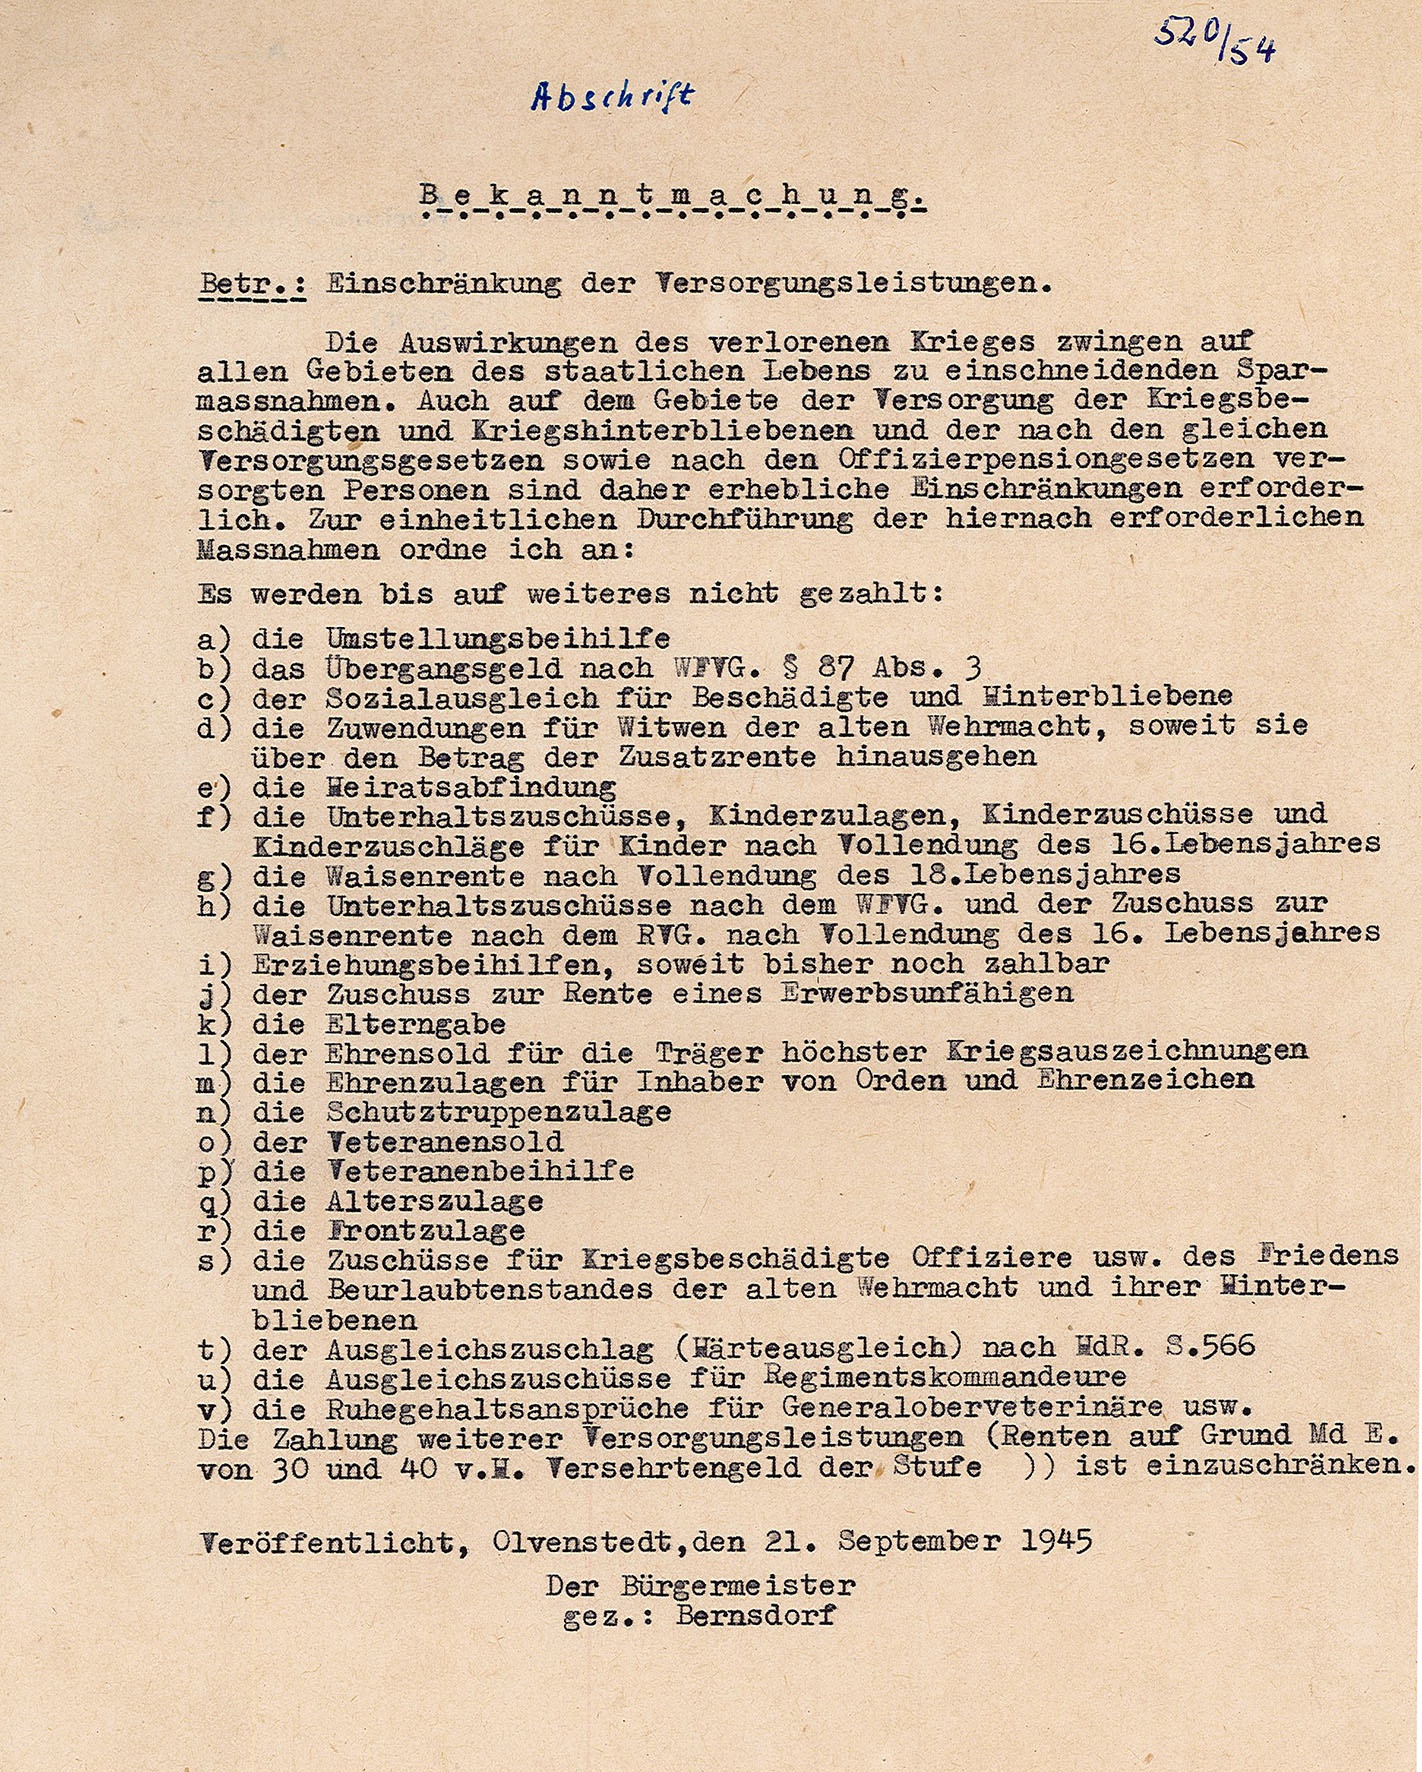 Bekanntmachung zur Einschränkung der Versorgungsleistungen, 1945 (Museum Wolmirstedt RR-F)